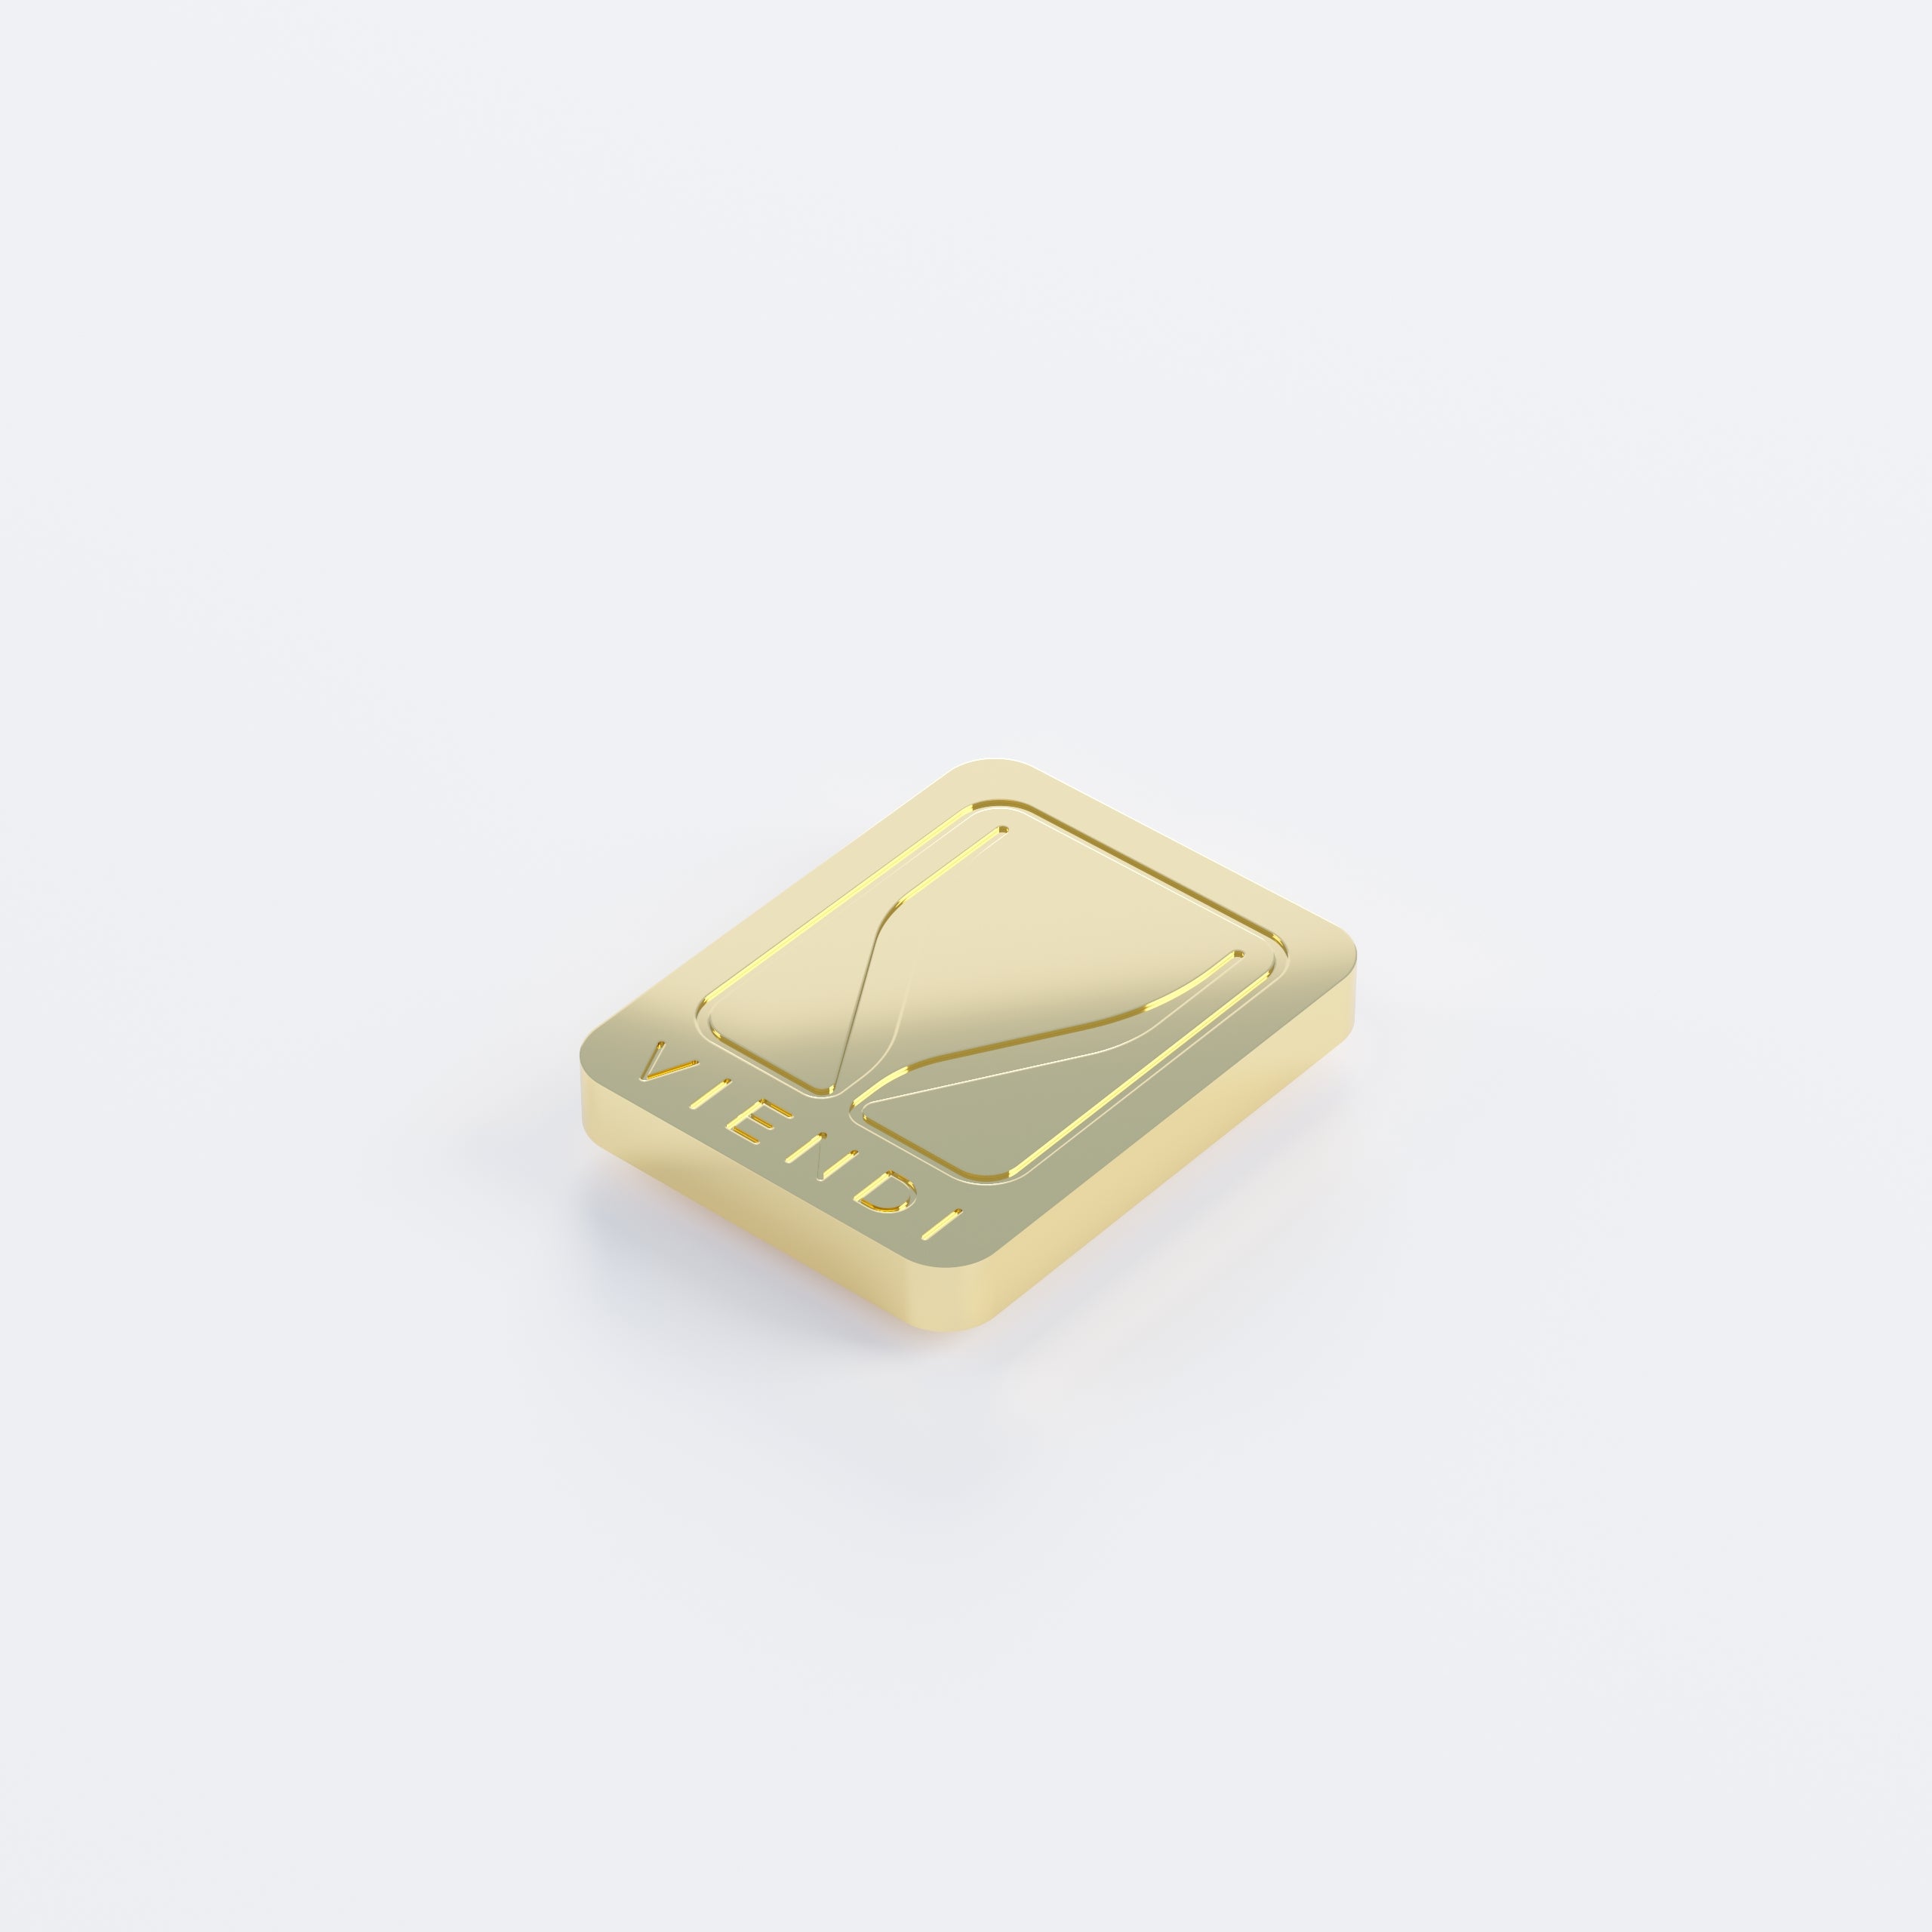 Viendi 8L Gold Emblem proxied by KeebsForAll